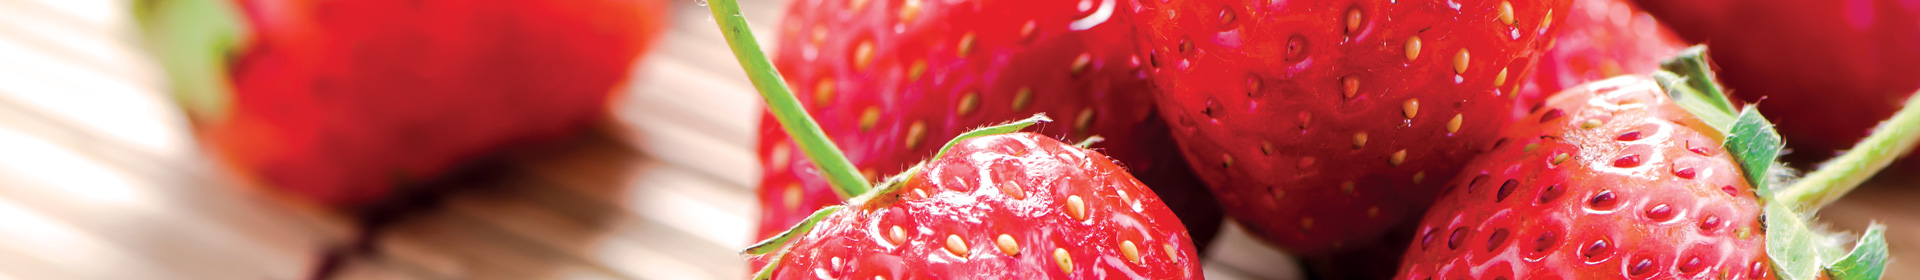 Banniere fruit La fraise Sicoly